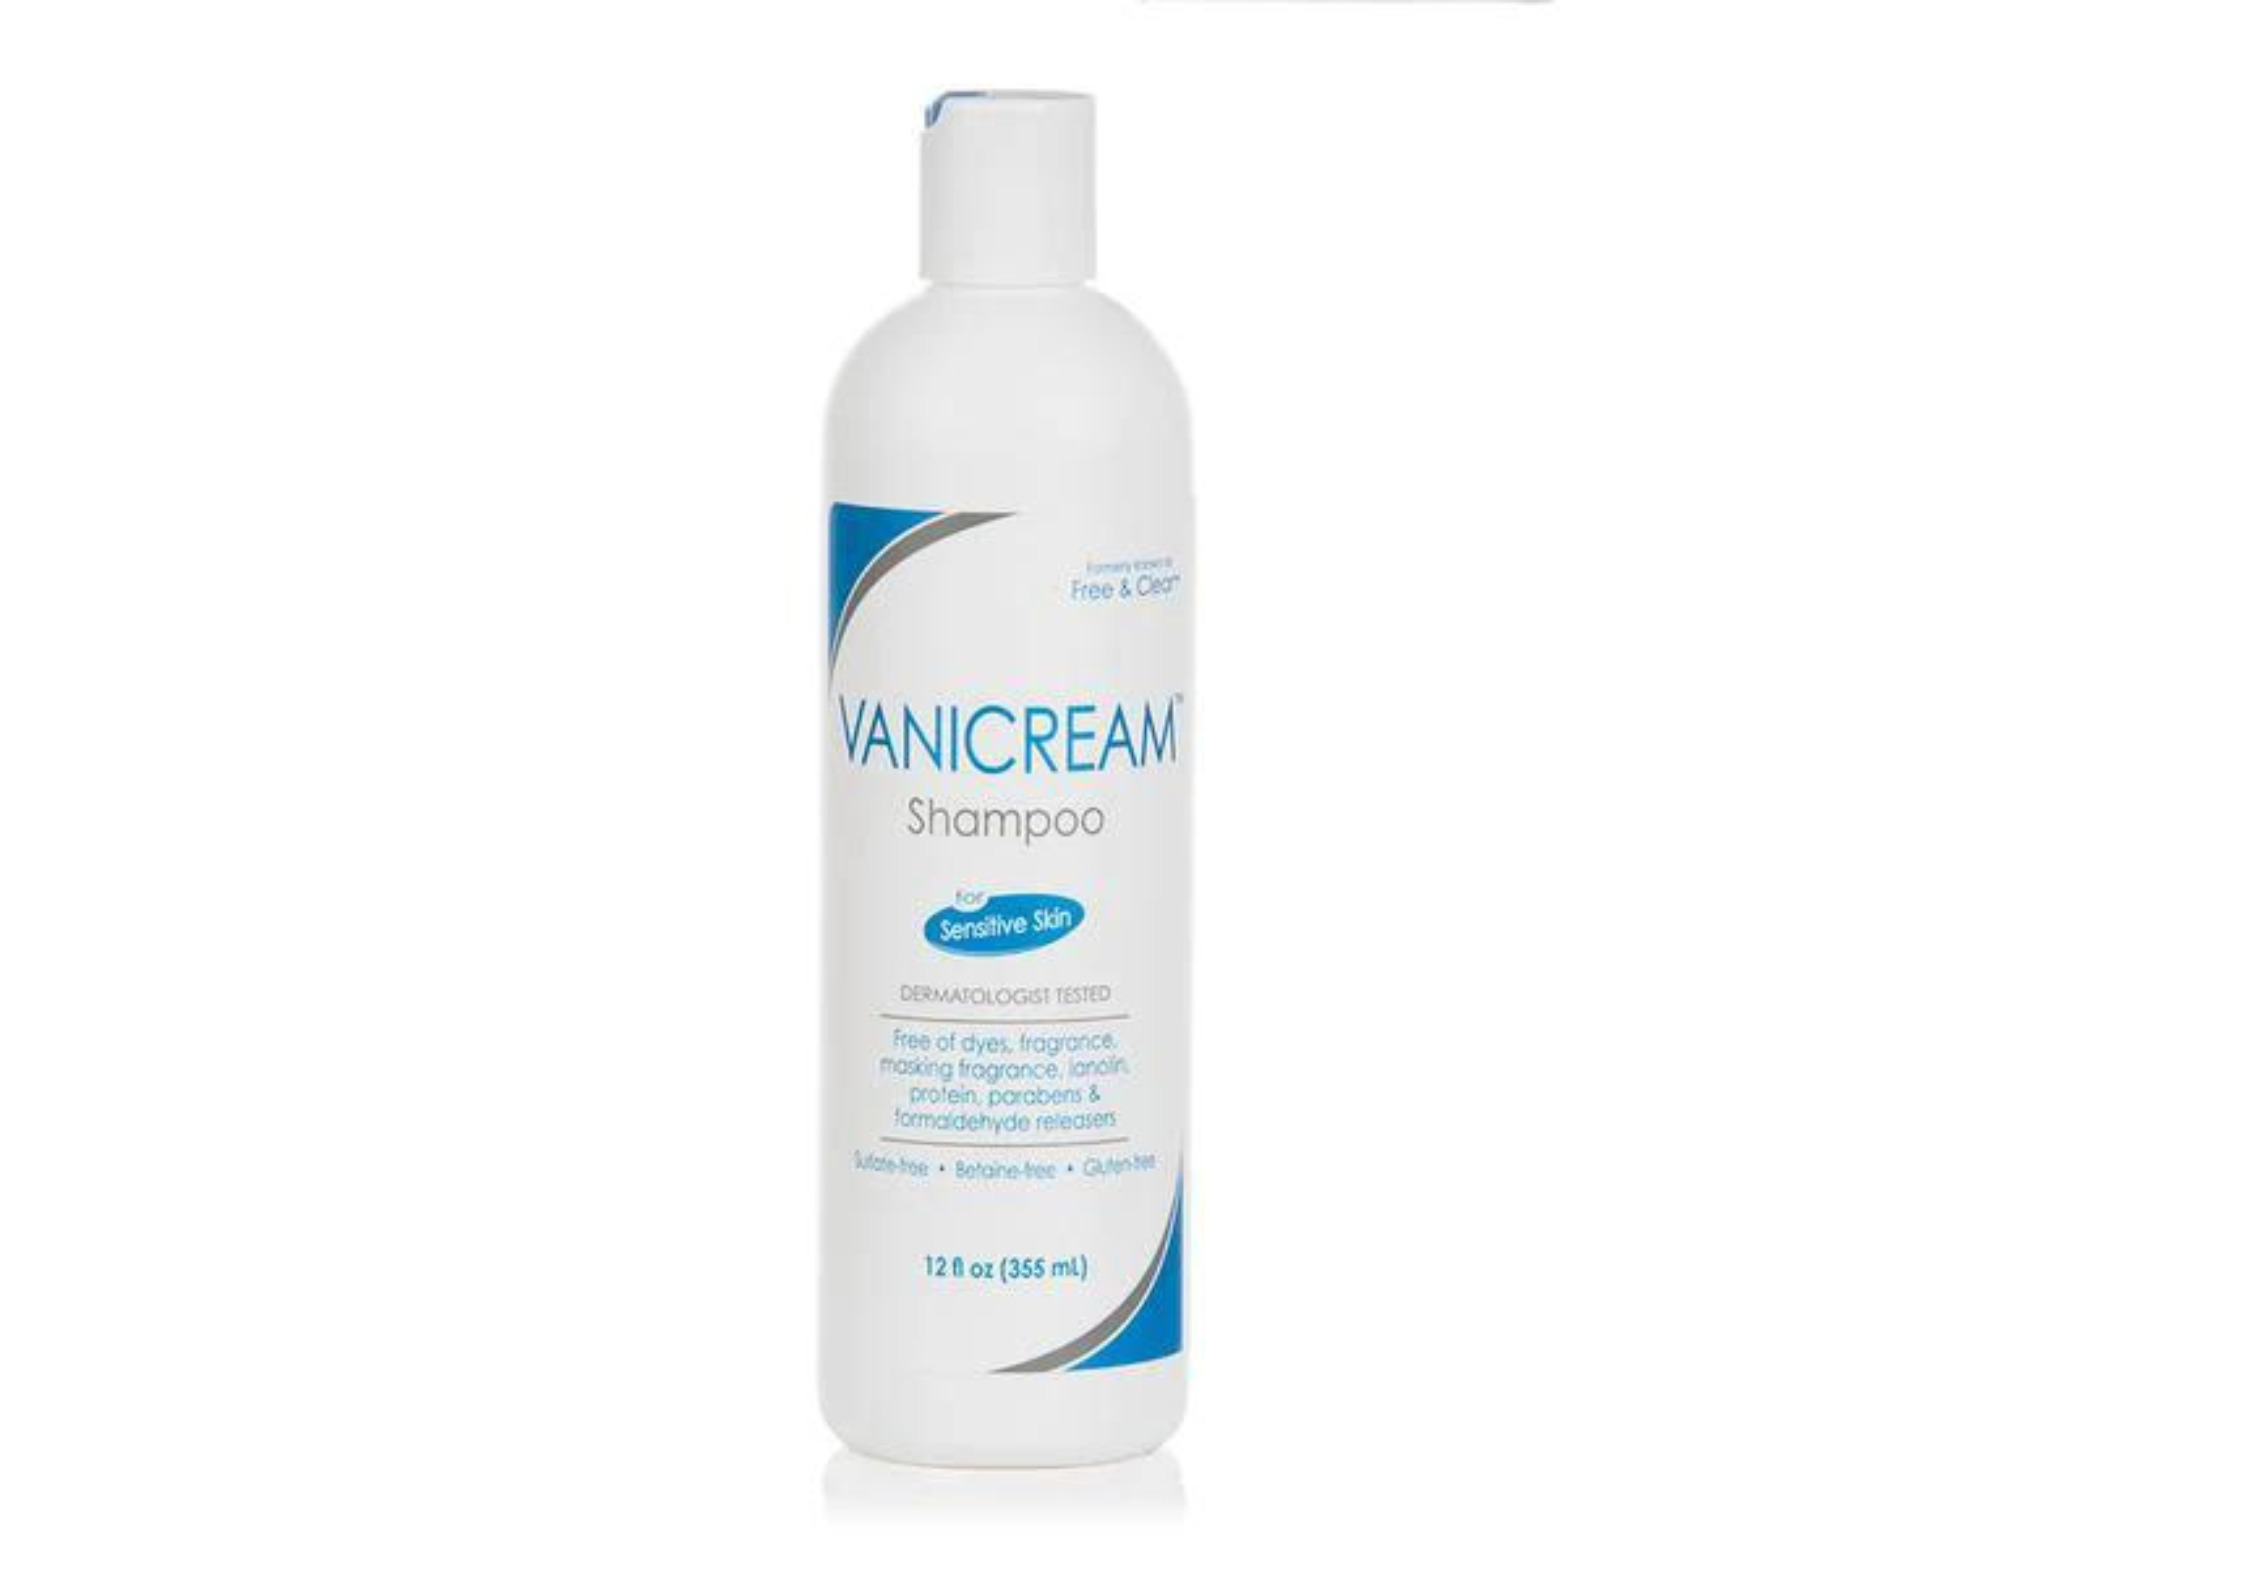 VANICREAM Free & Clear Shampoo